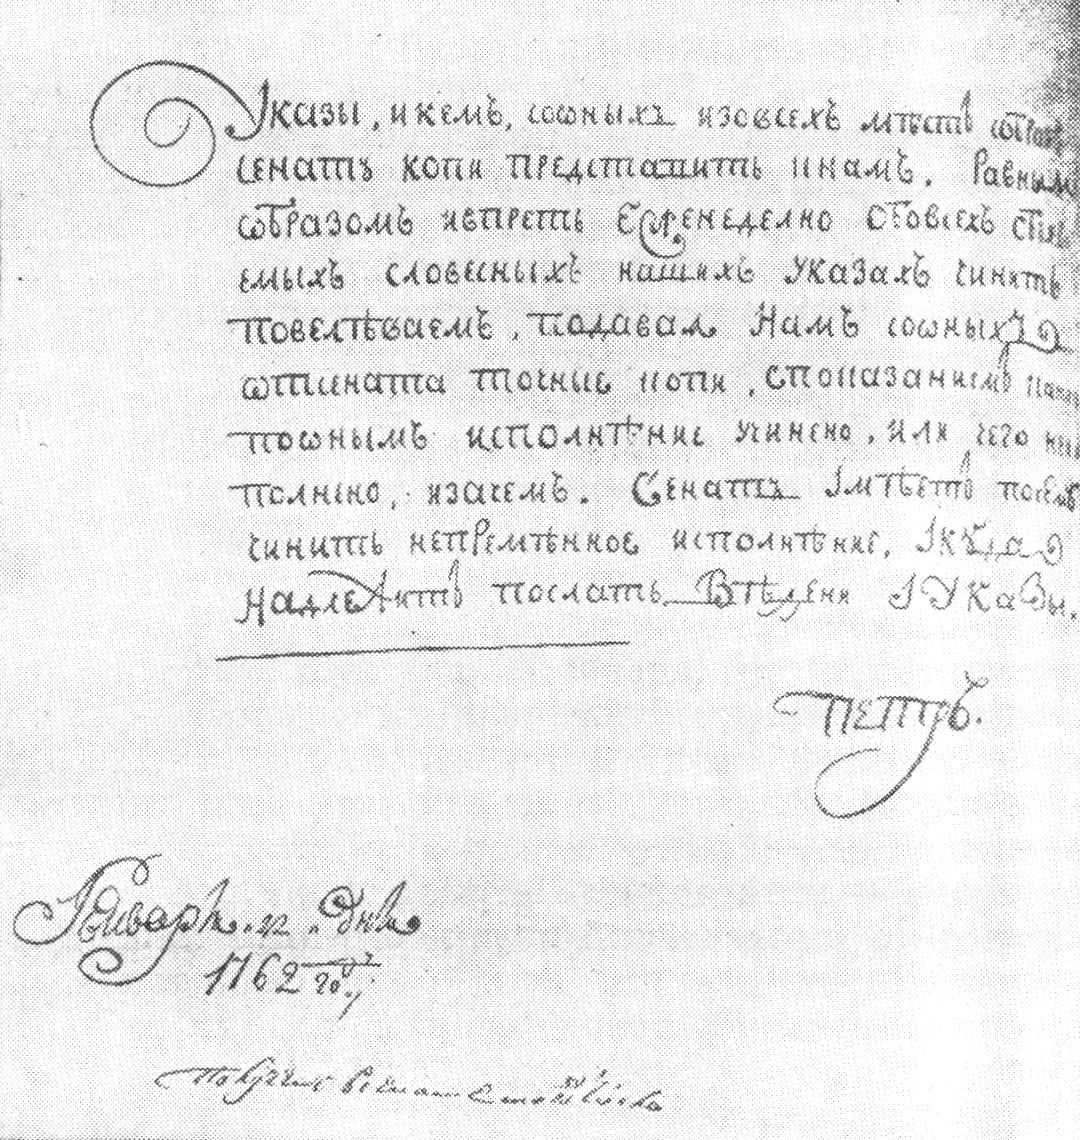 Подпись-автограф императора Петра III под указом о предоставлении ему еженедельно копий его словесных повелений. 22 января 1762 г. (ЦГИА СССР, ф. 2, № 96, л. 67 об.)